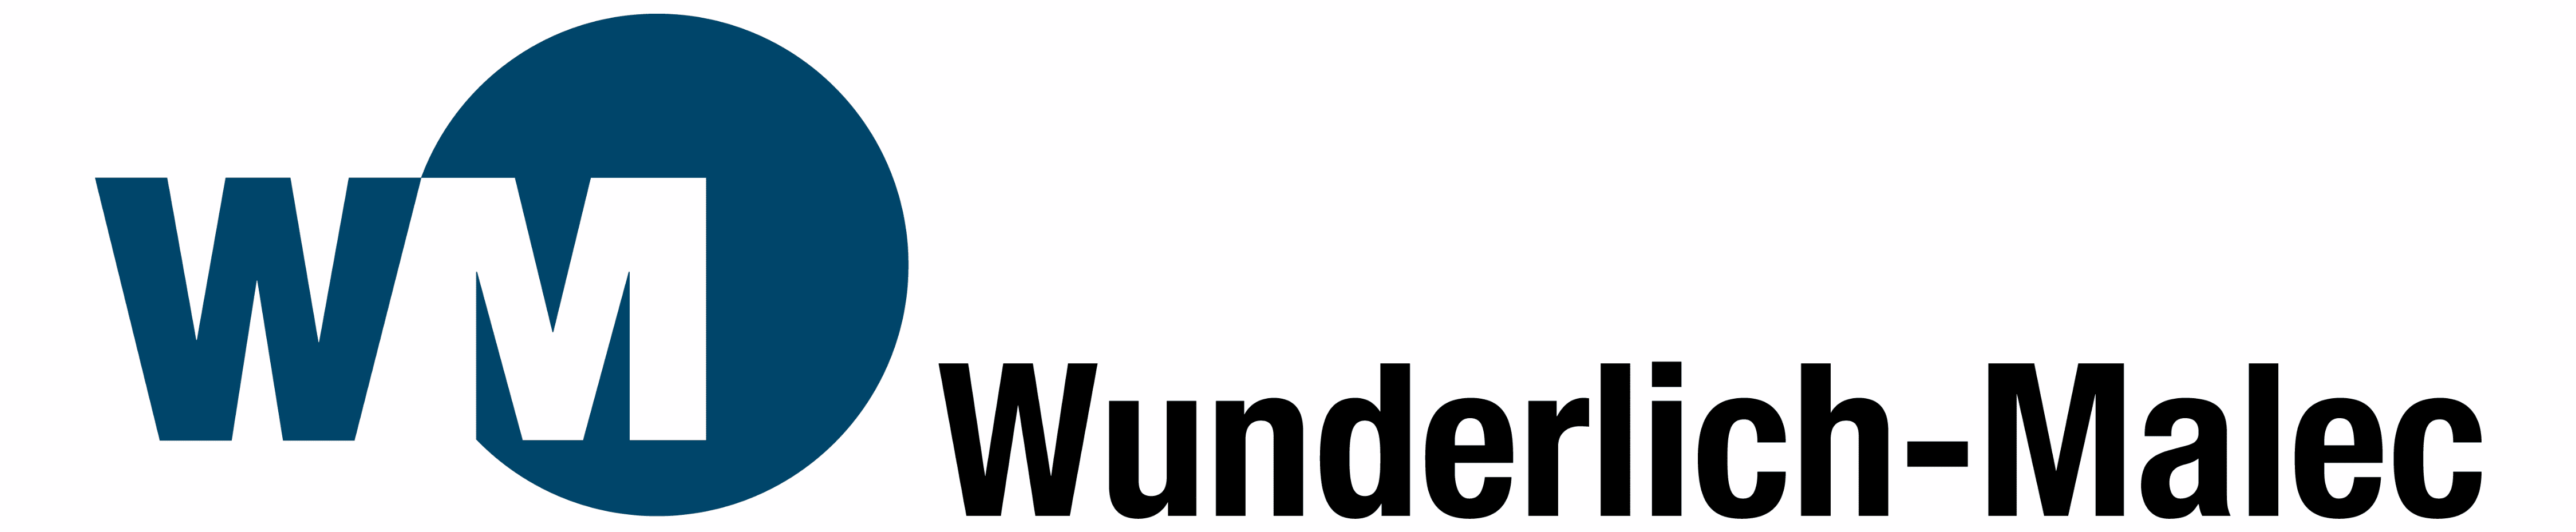 Wunderlich-Malec logo